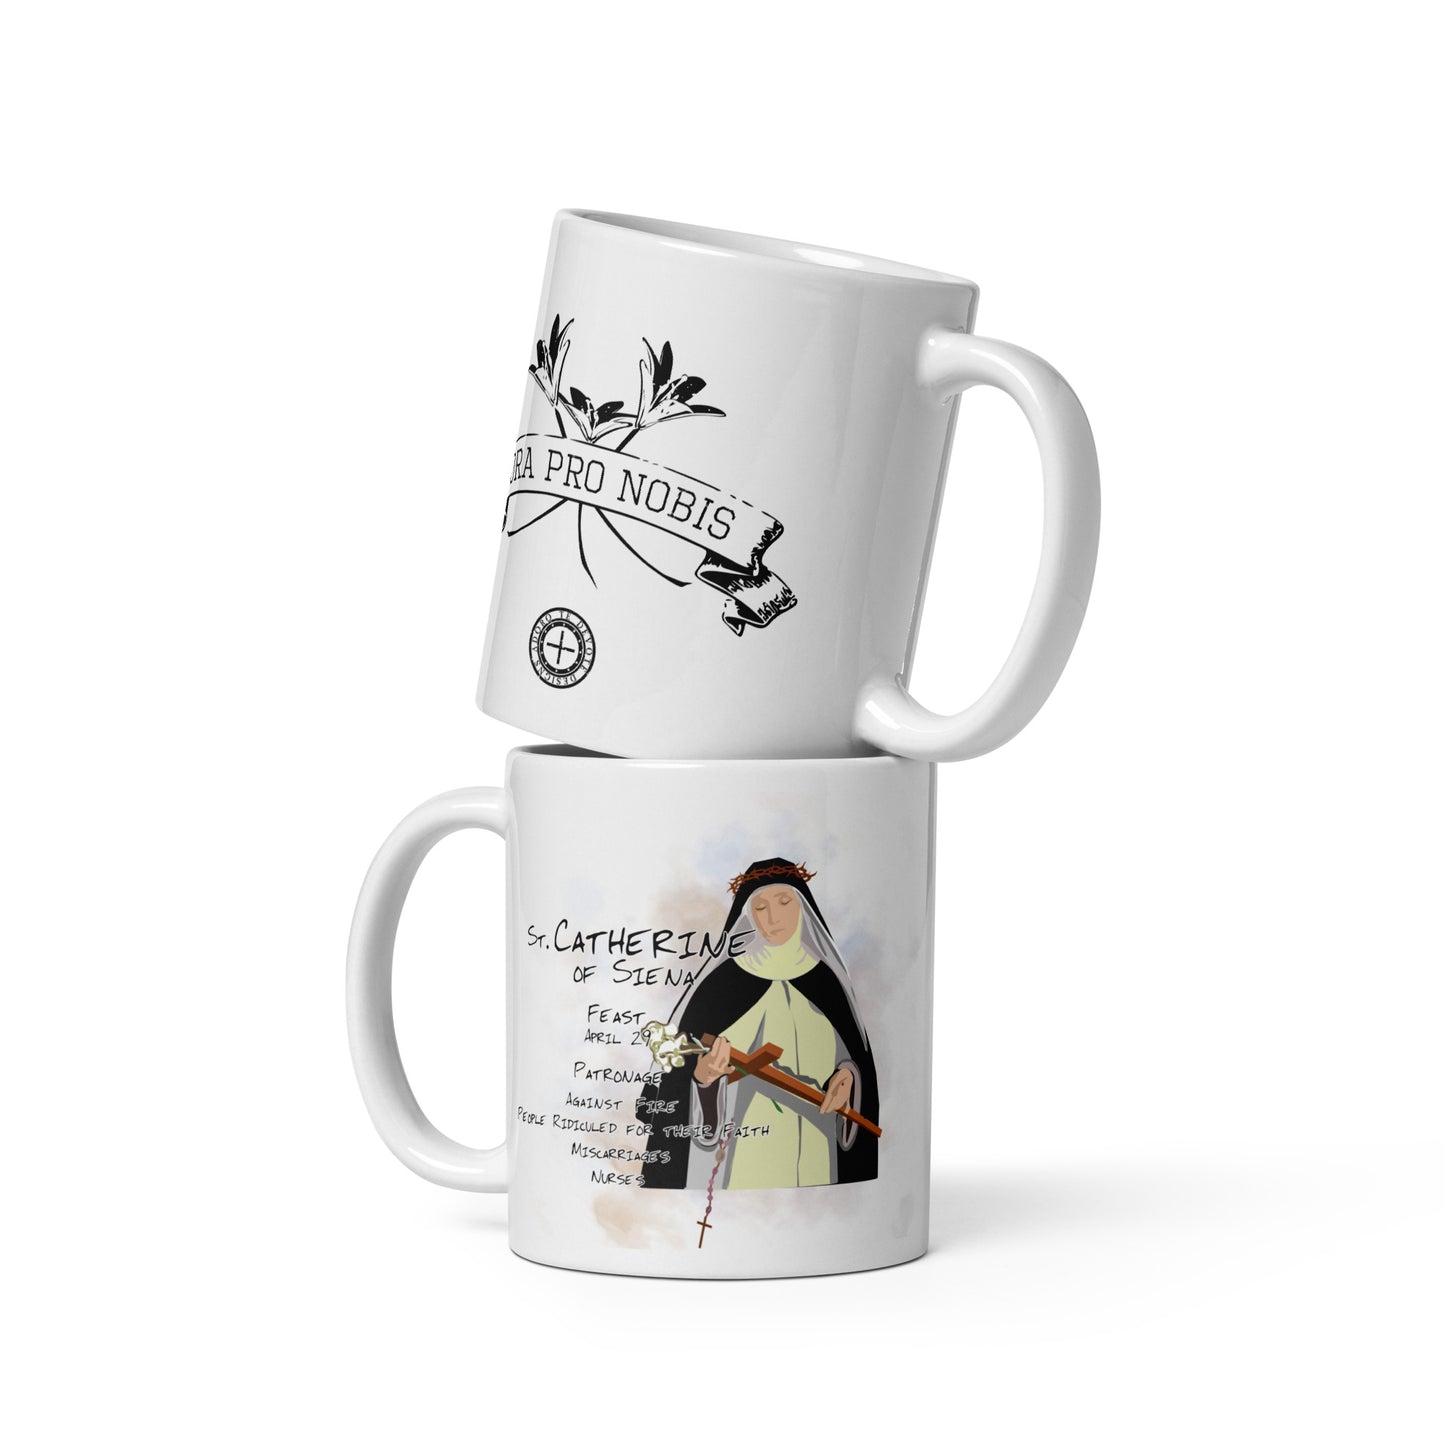 St. Catherine of Siena Mug